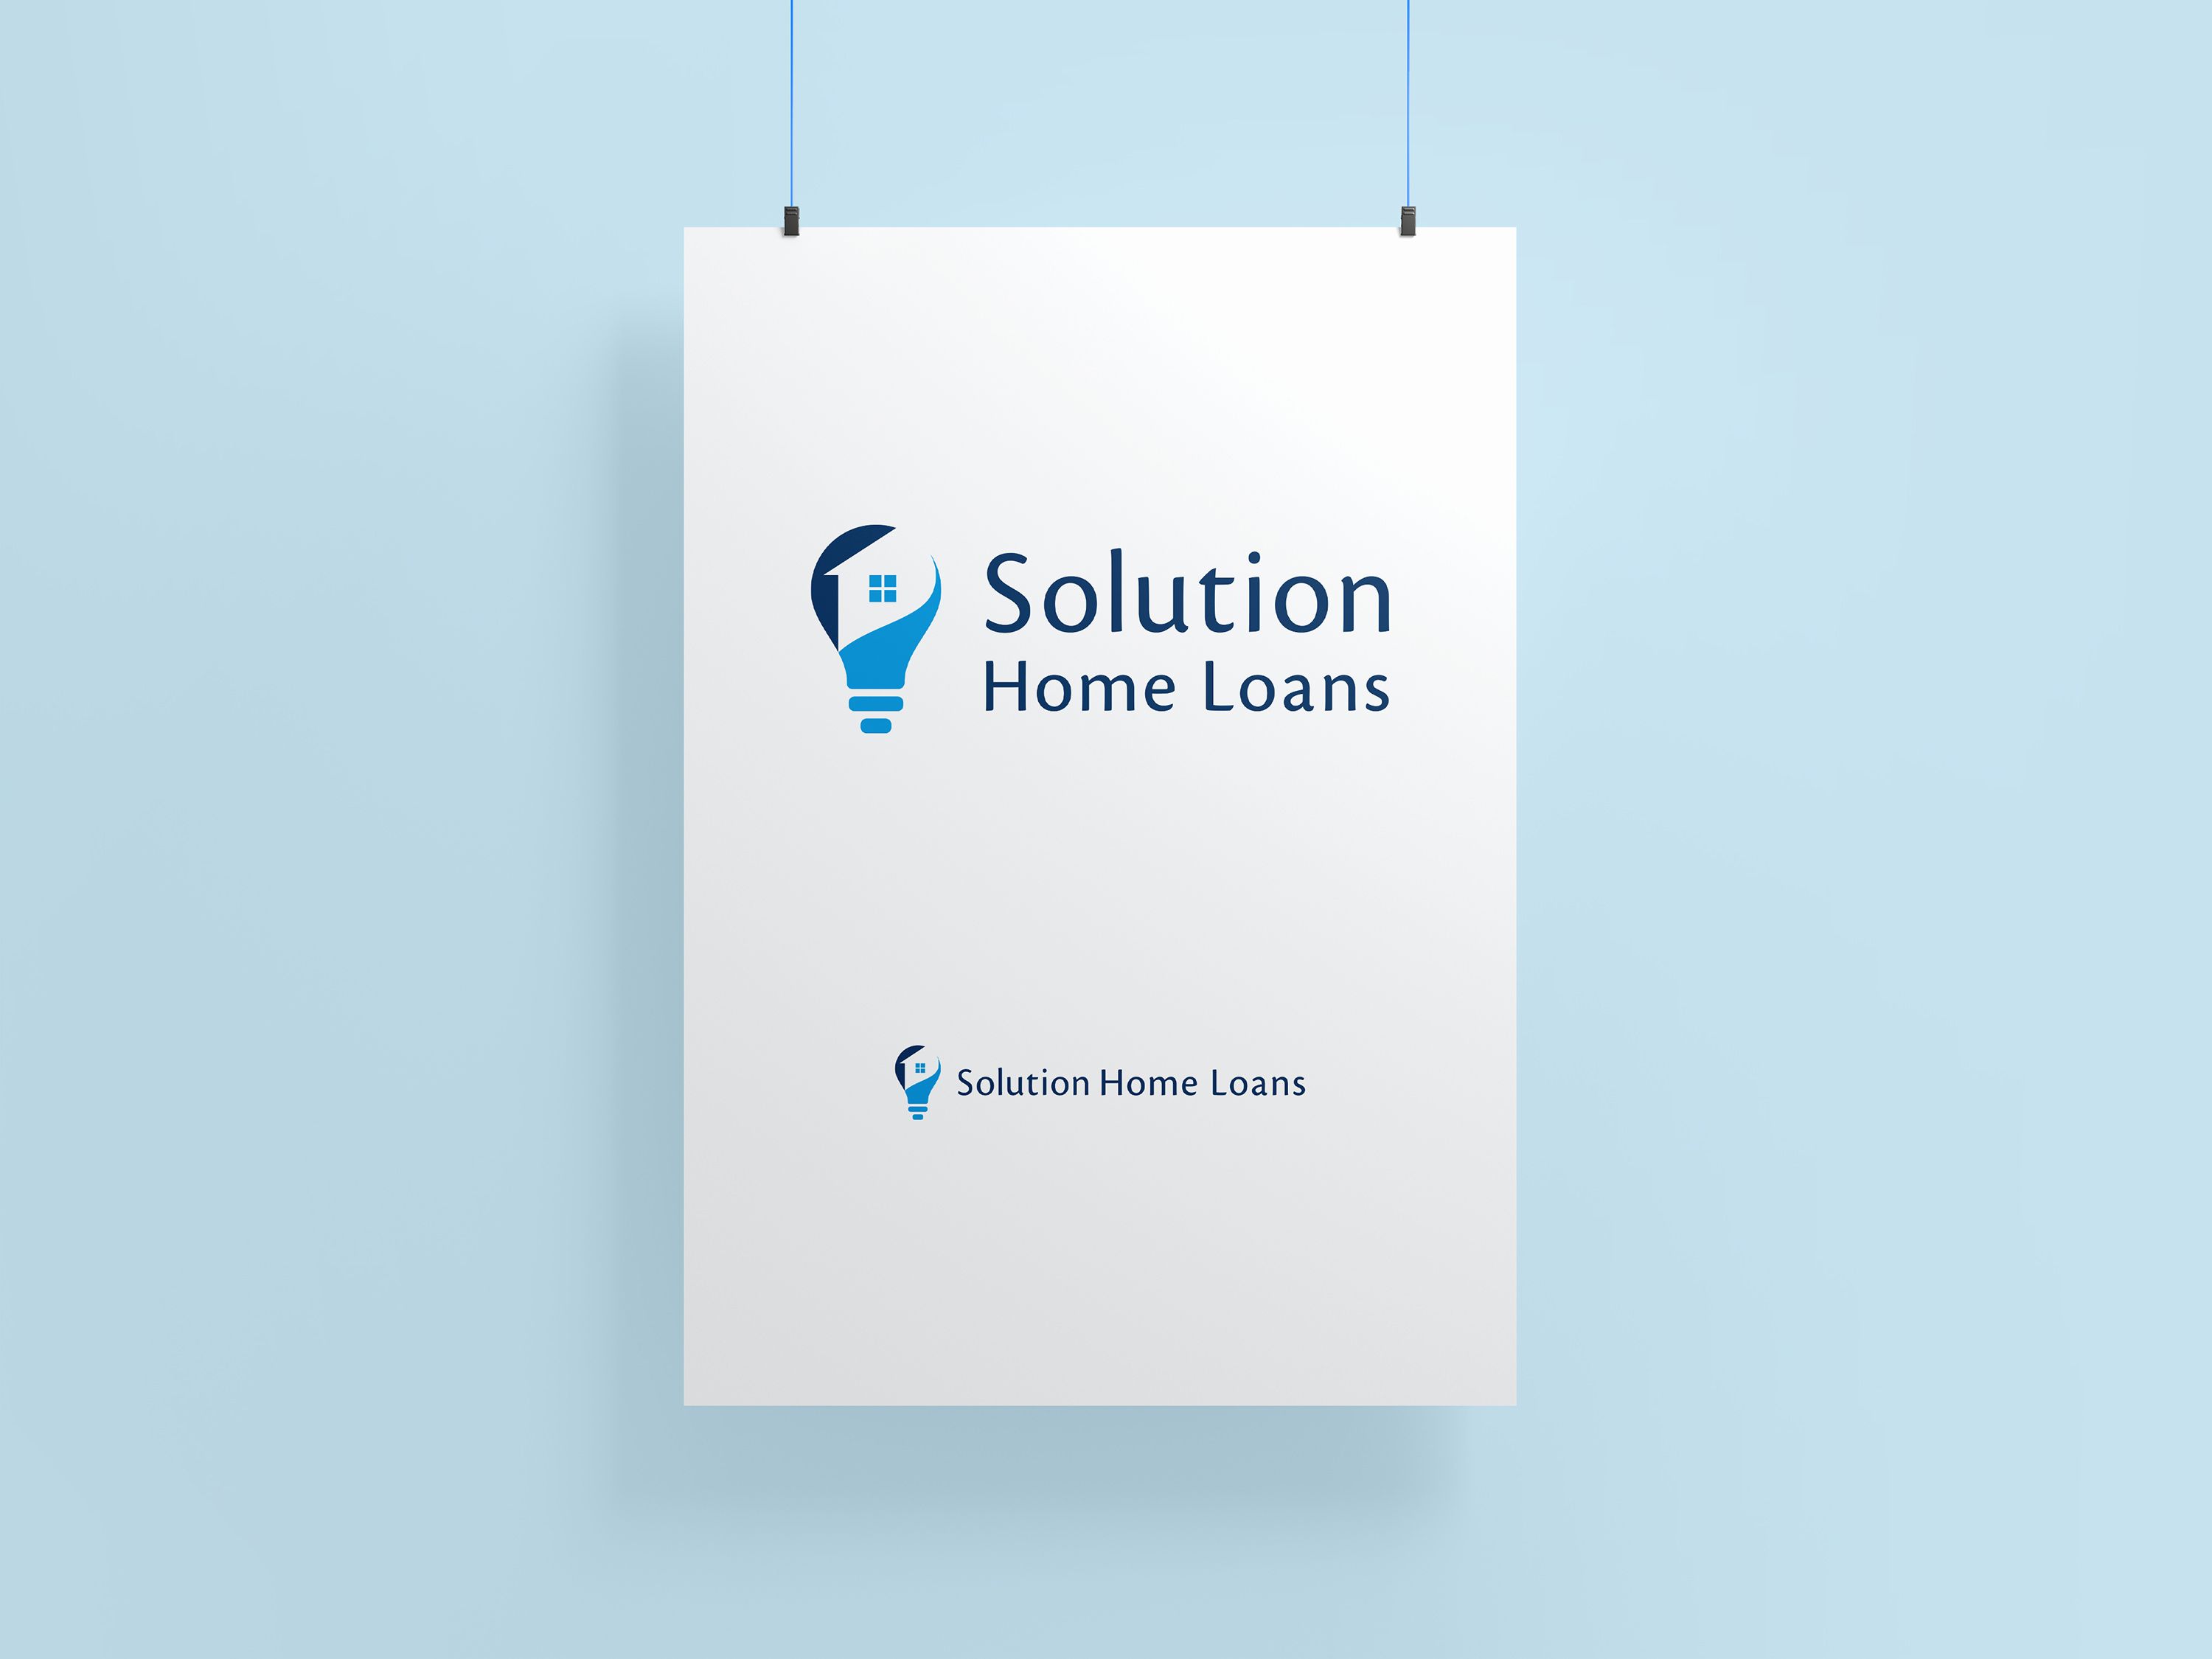 Solution Home Loans colour logo version